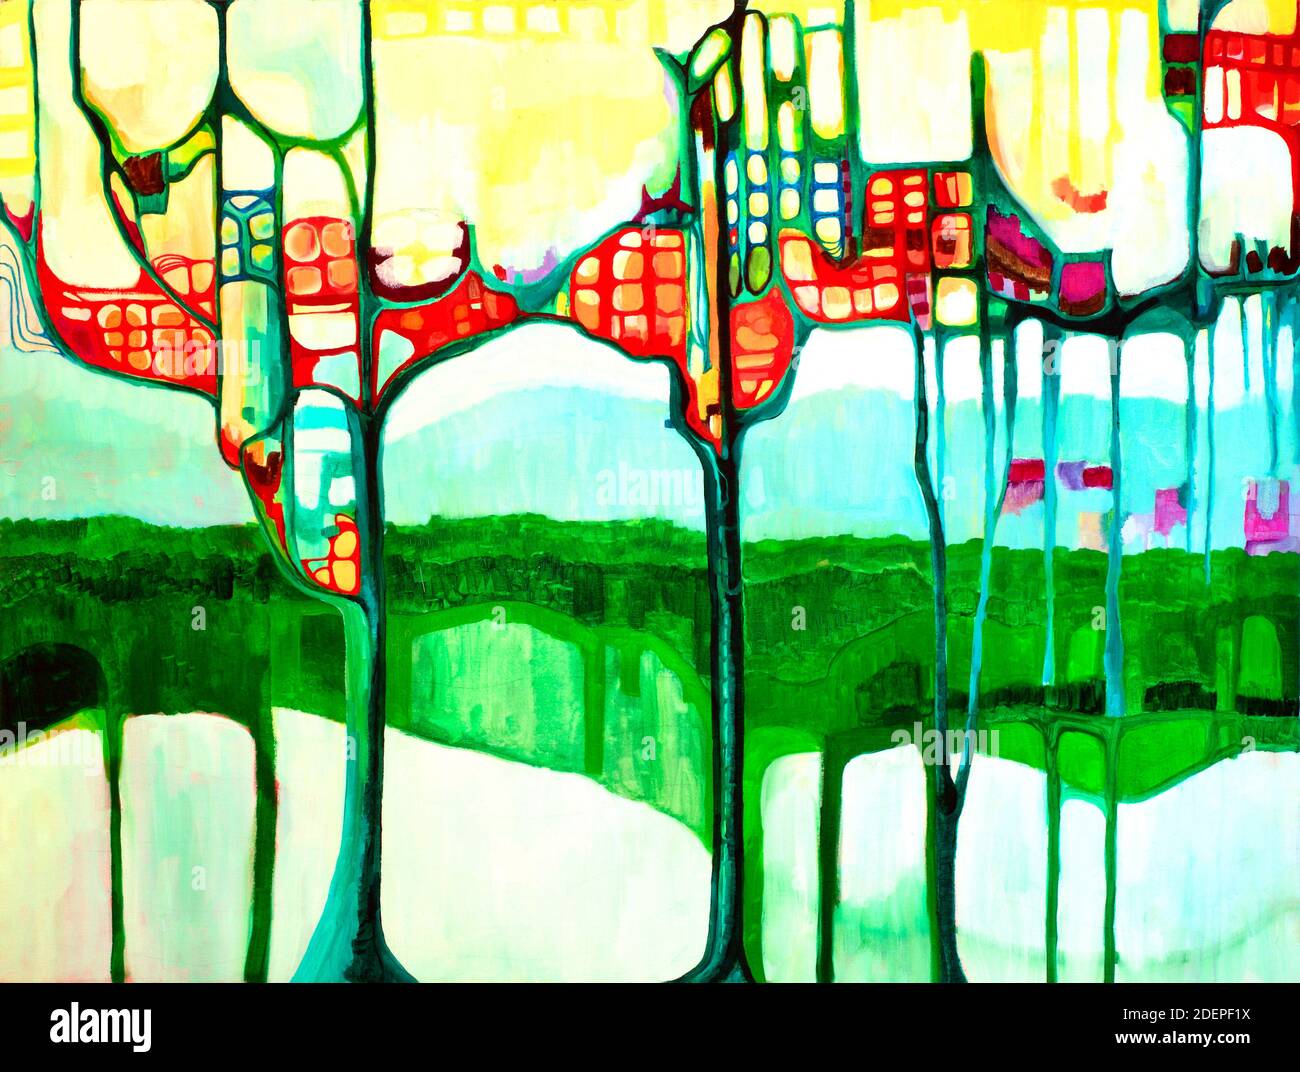 Alberi - una grafica astratta Illustrazione di Sandra Zaro raffigurante case di alberi scheletrici come alberi in alto sopra il terreno vicino a un lago. Foto Stock